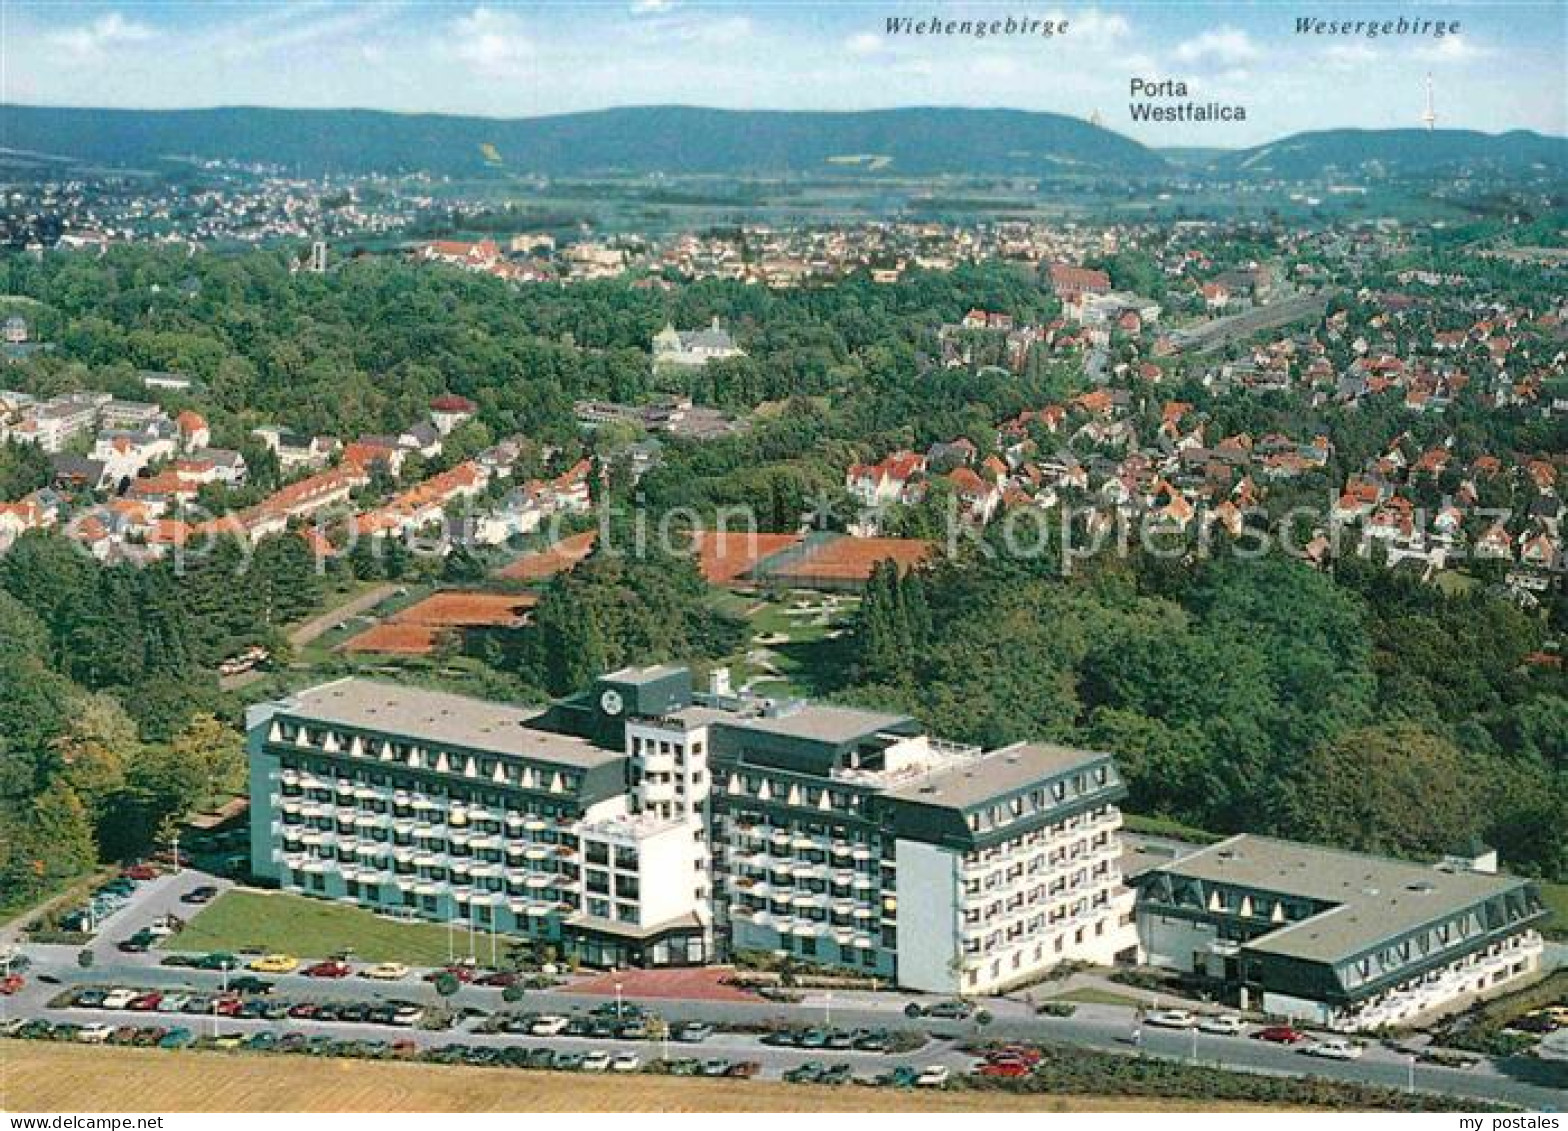 72862361 Bad Oeynhausen Weserklinik Wiehengebirge Porta Westfalica Wesergebirge  - Bad Oeynhausen